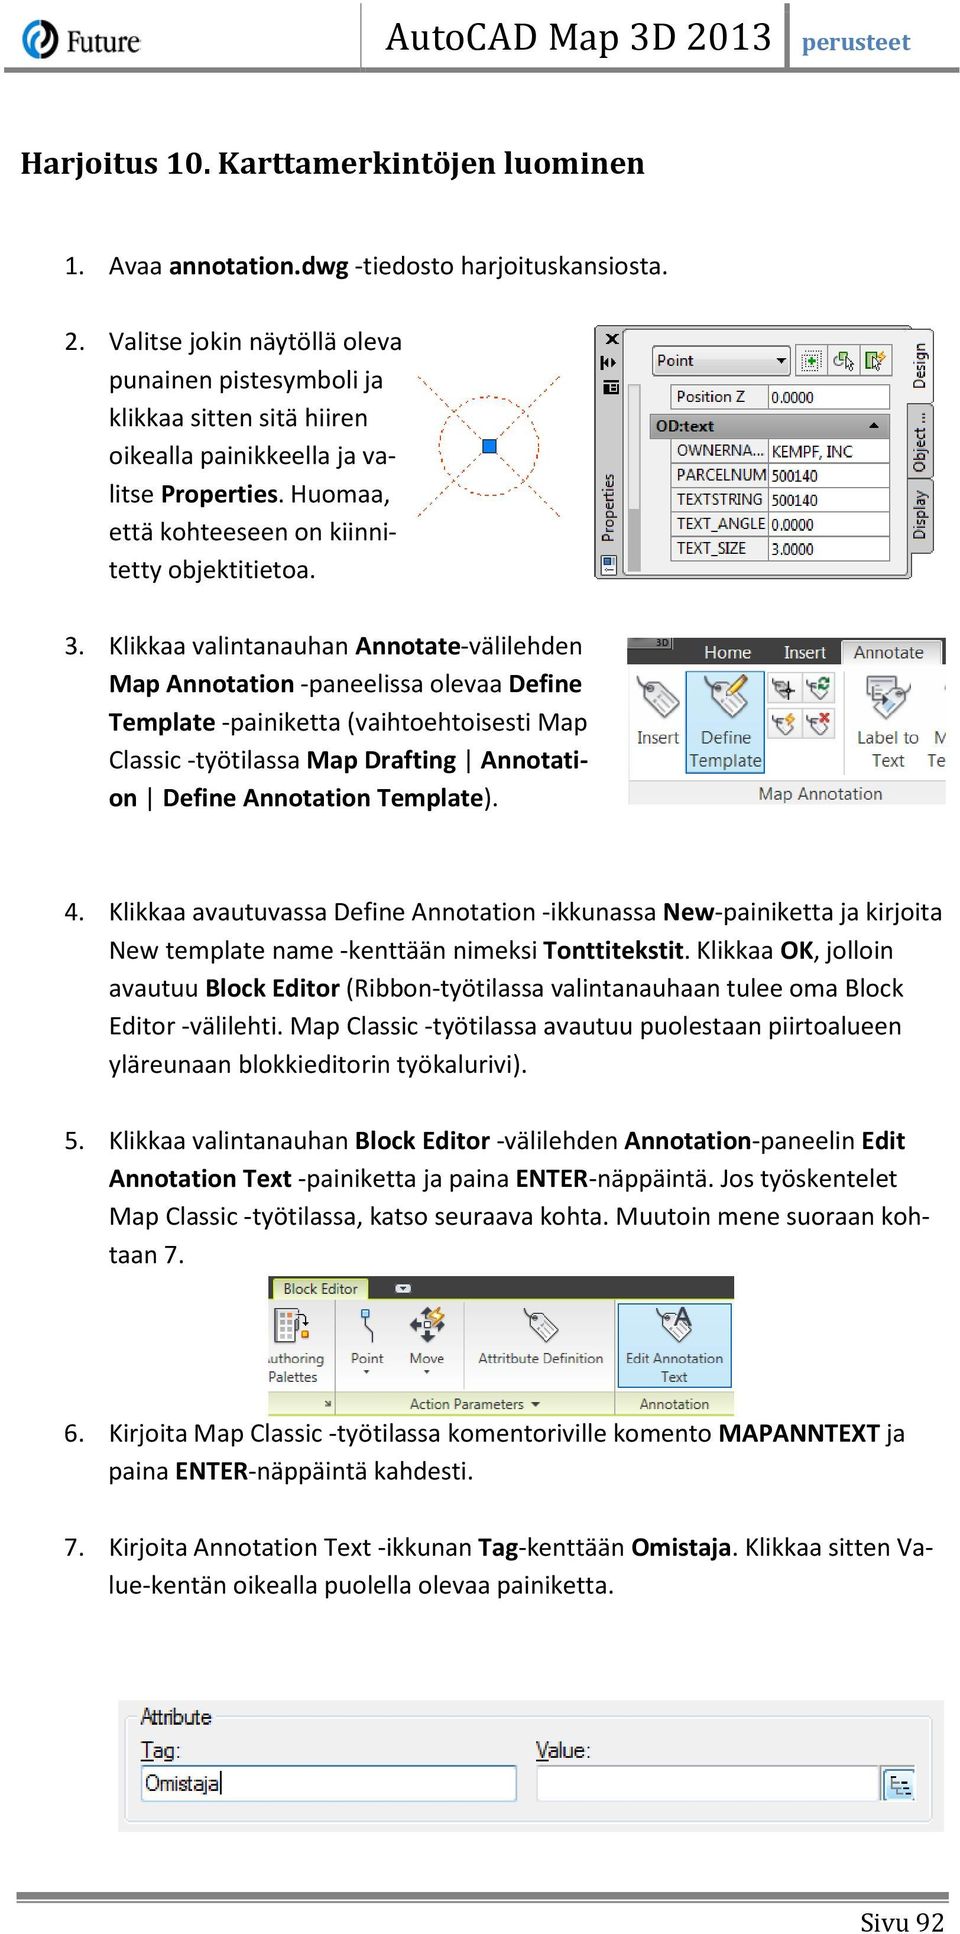 Klikkaa valintanauhan Annotate-välilehden Map Annotation -paneelissa olevaa Define Template -painiketta (vaihtoehtoisesti Map Classic -työtilassa Map Drafting Annotation Define Annotation Template).